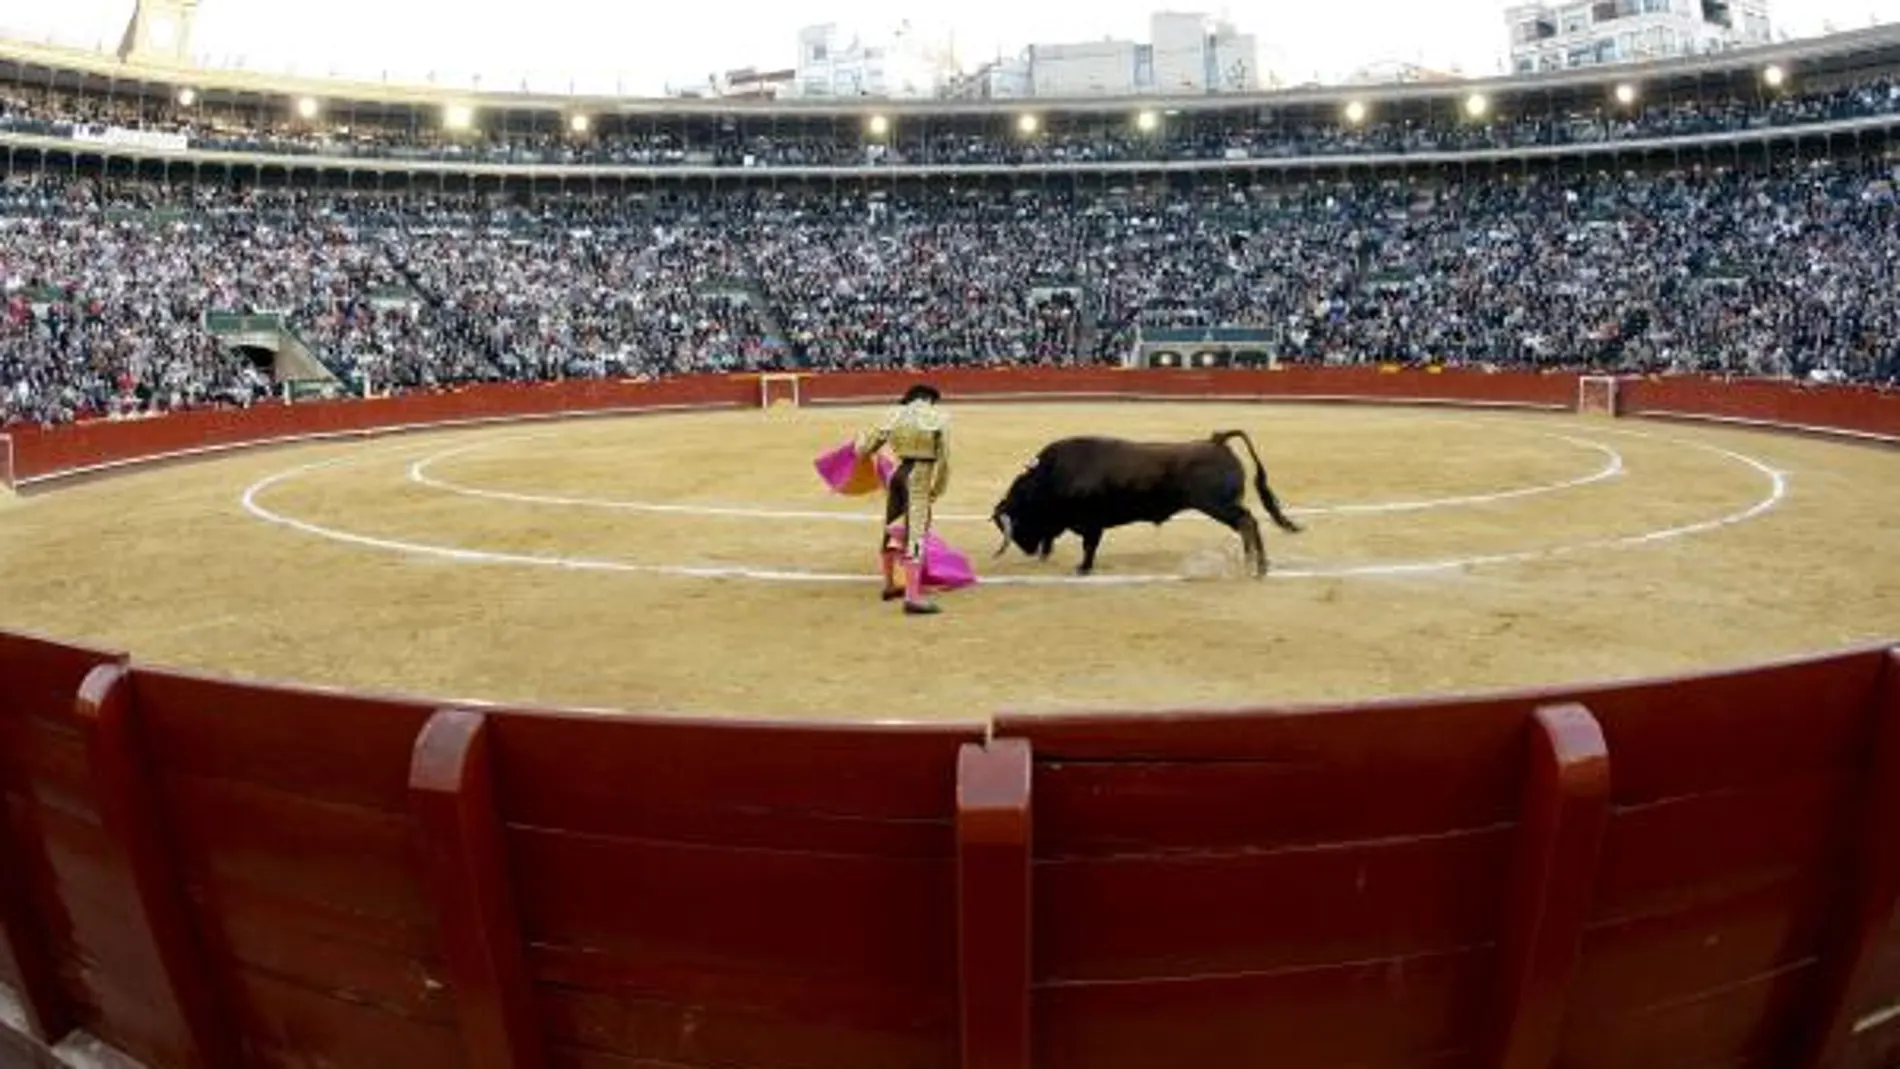 El torero Enrique Ponce en una imagen de archivo toreando en la feria de las Fallas de Valencia